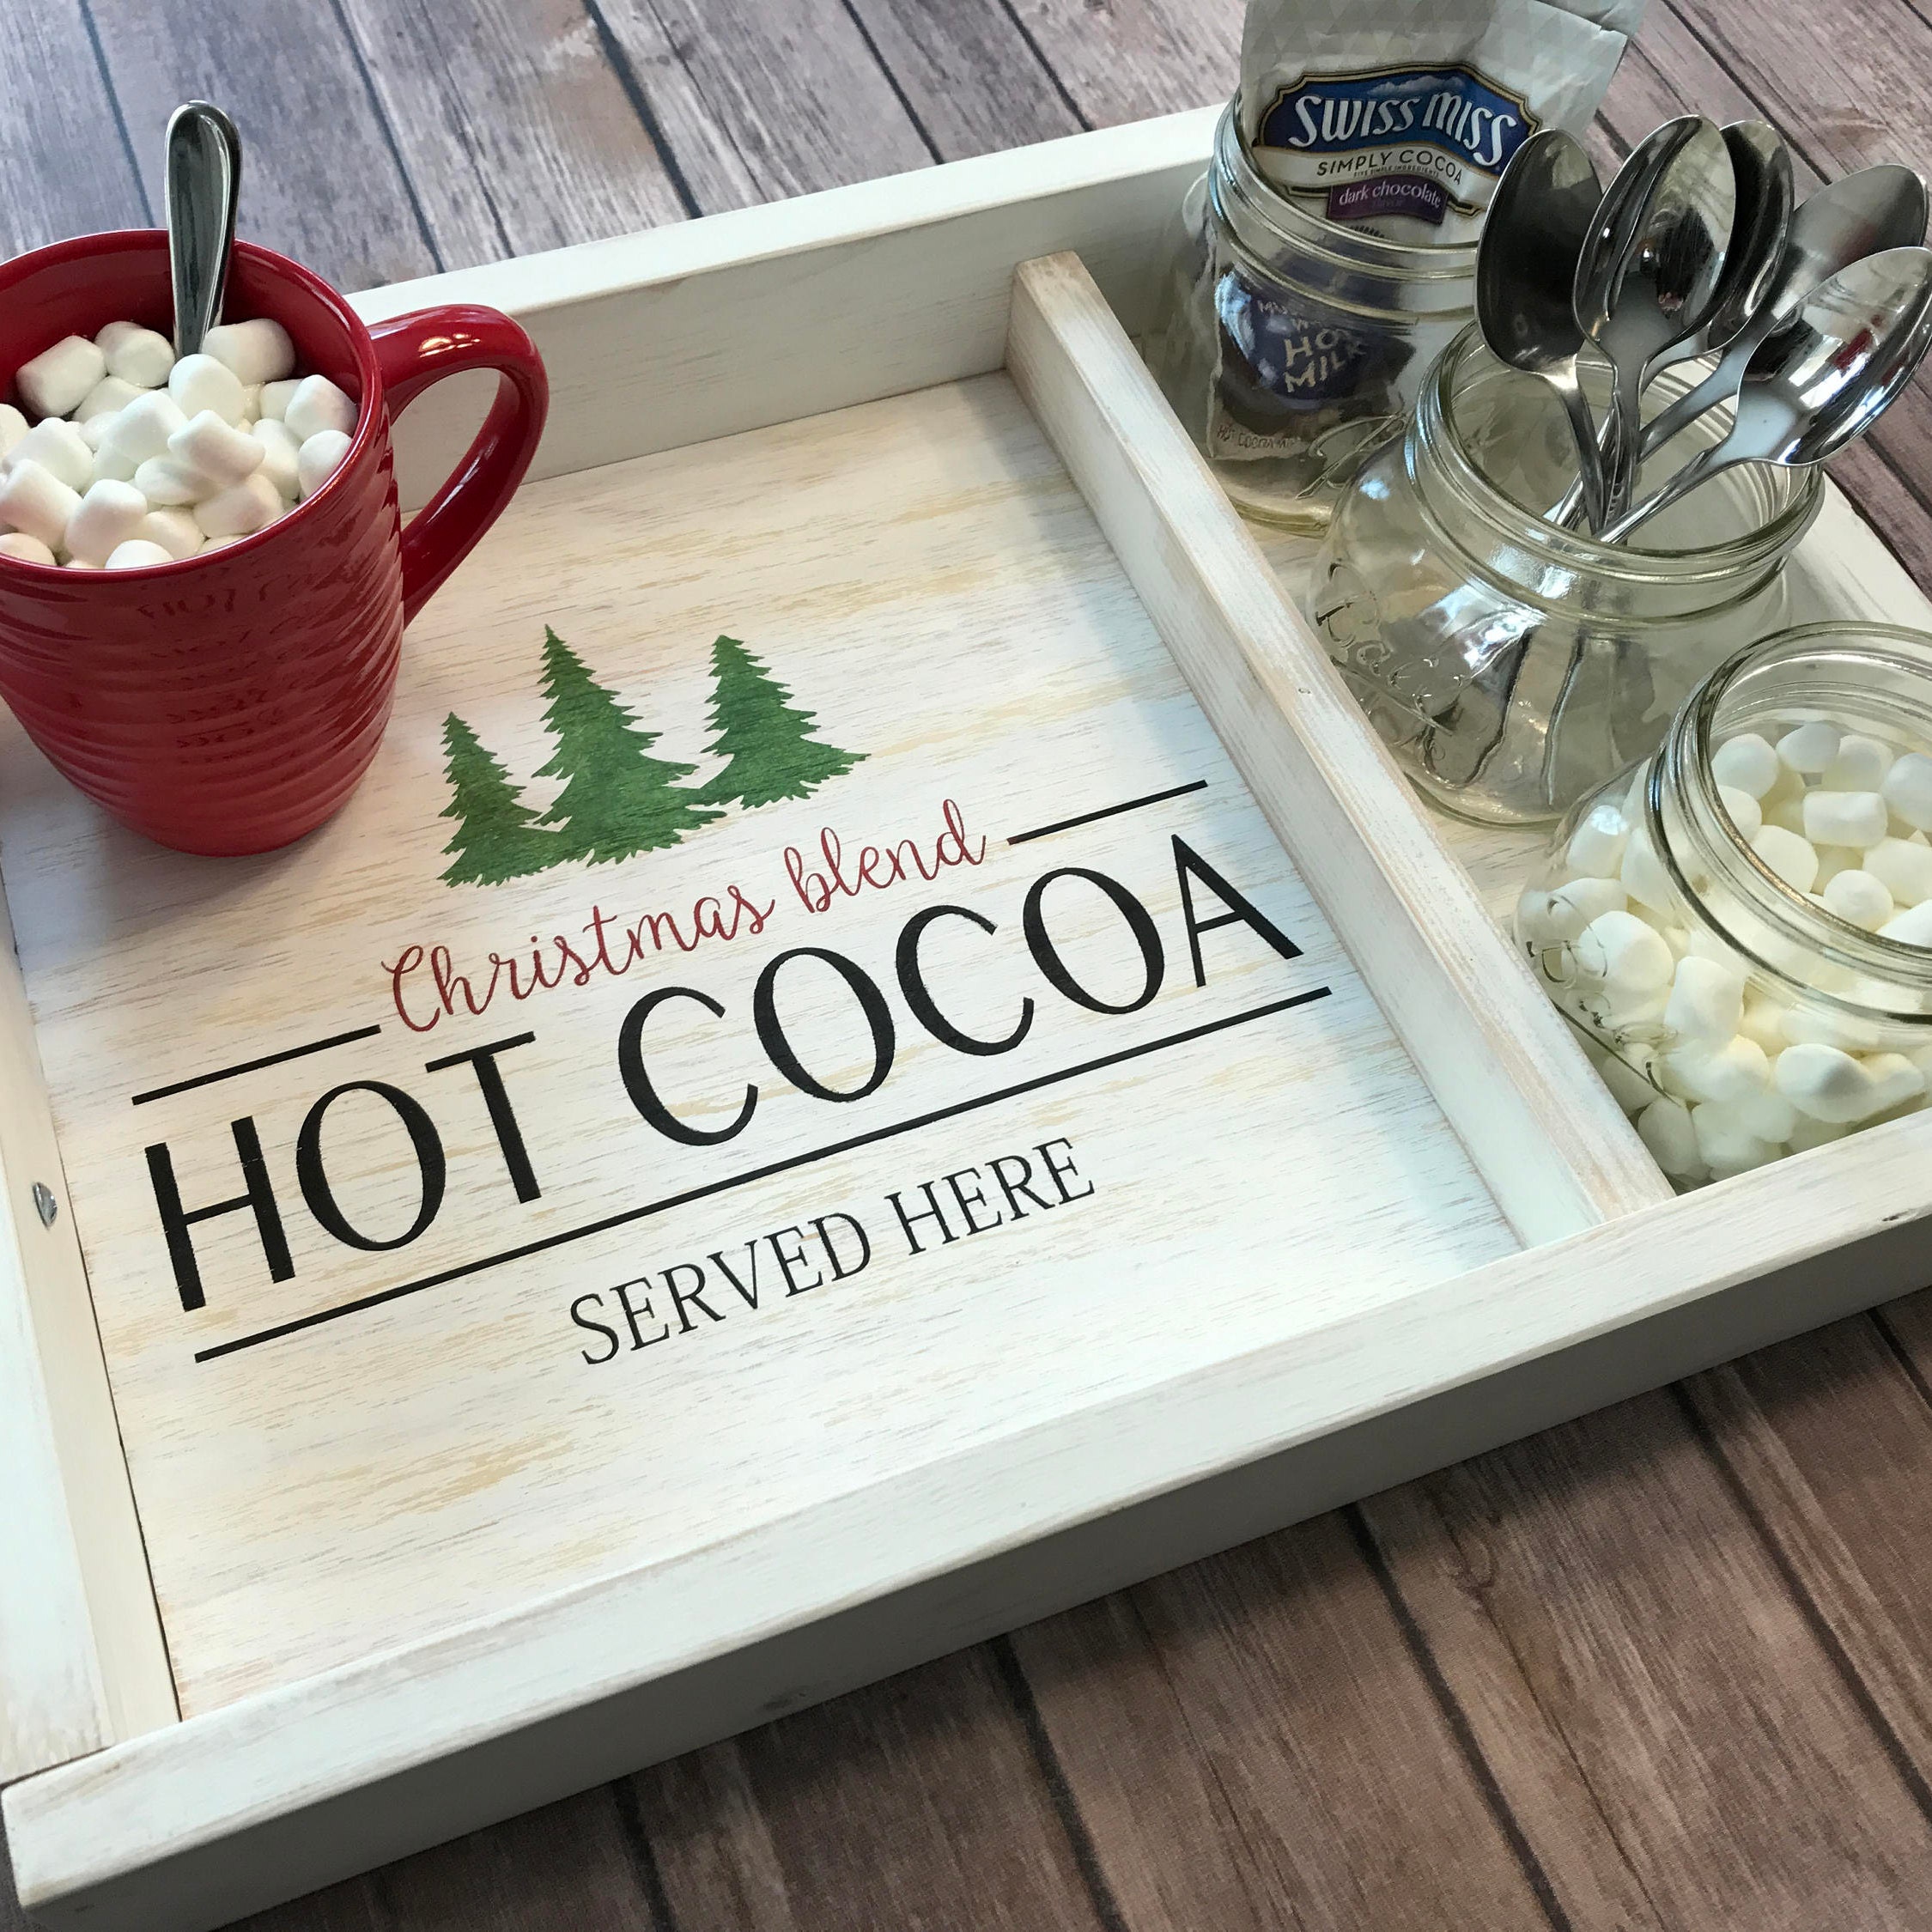  Xylolfsty Hot Cocoa Bar Tray Hot Cocoa Station Wooden